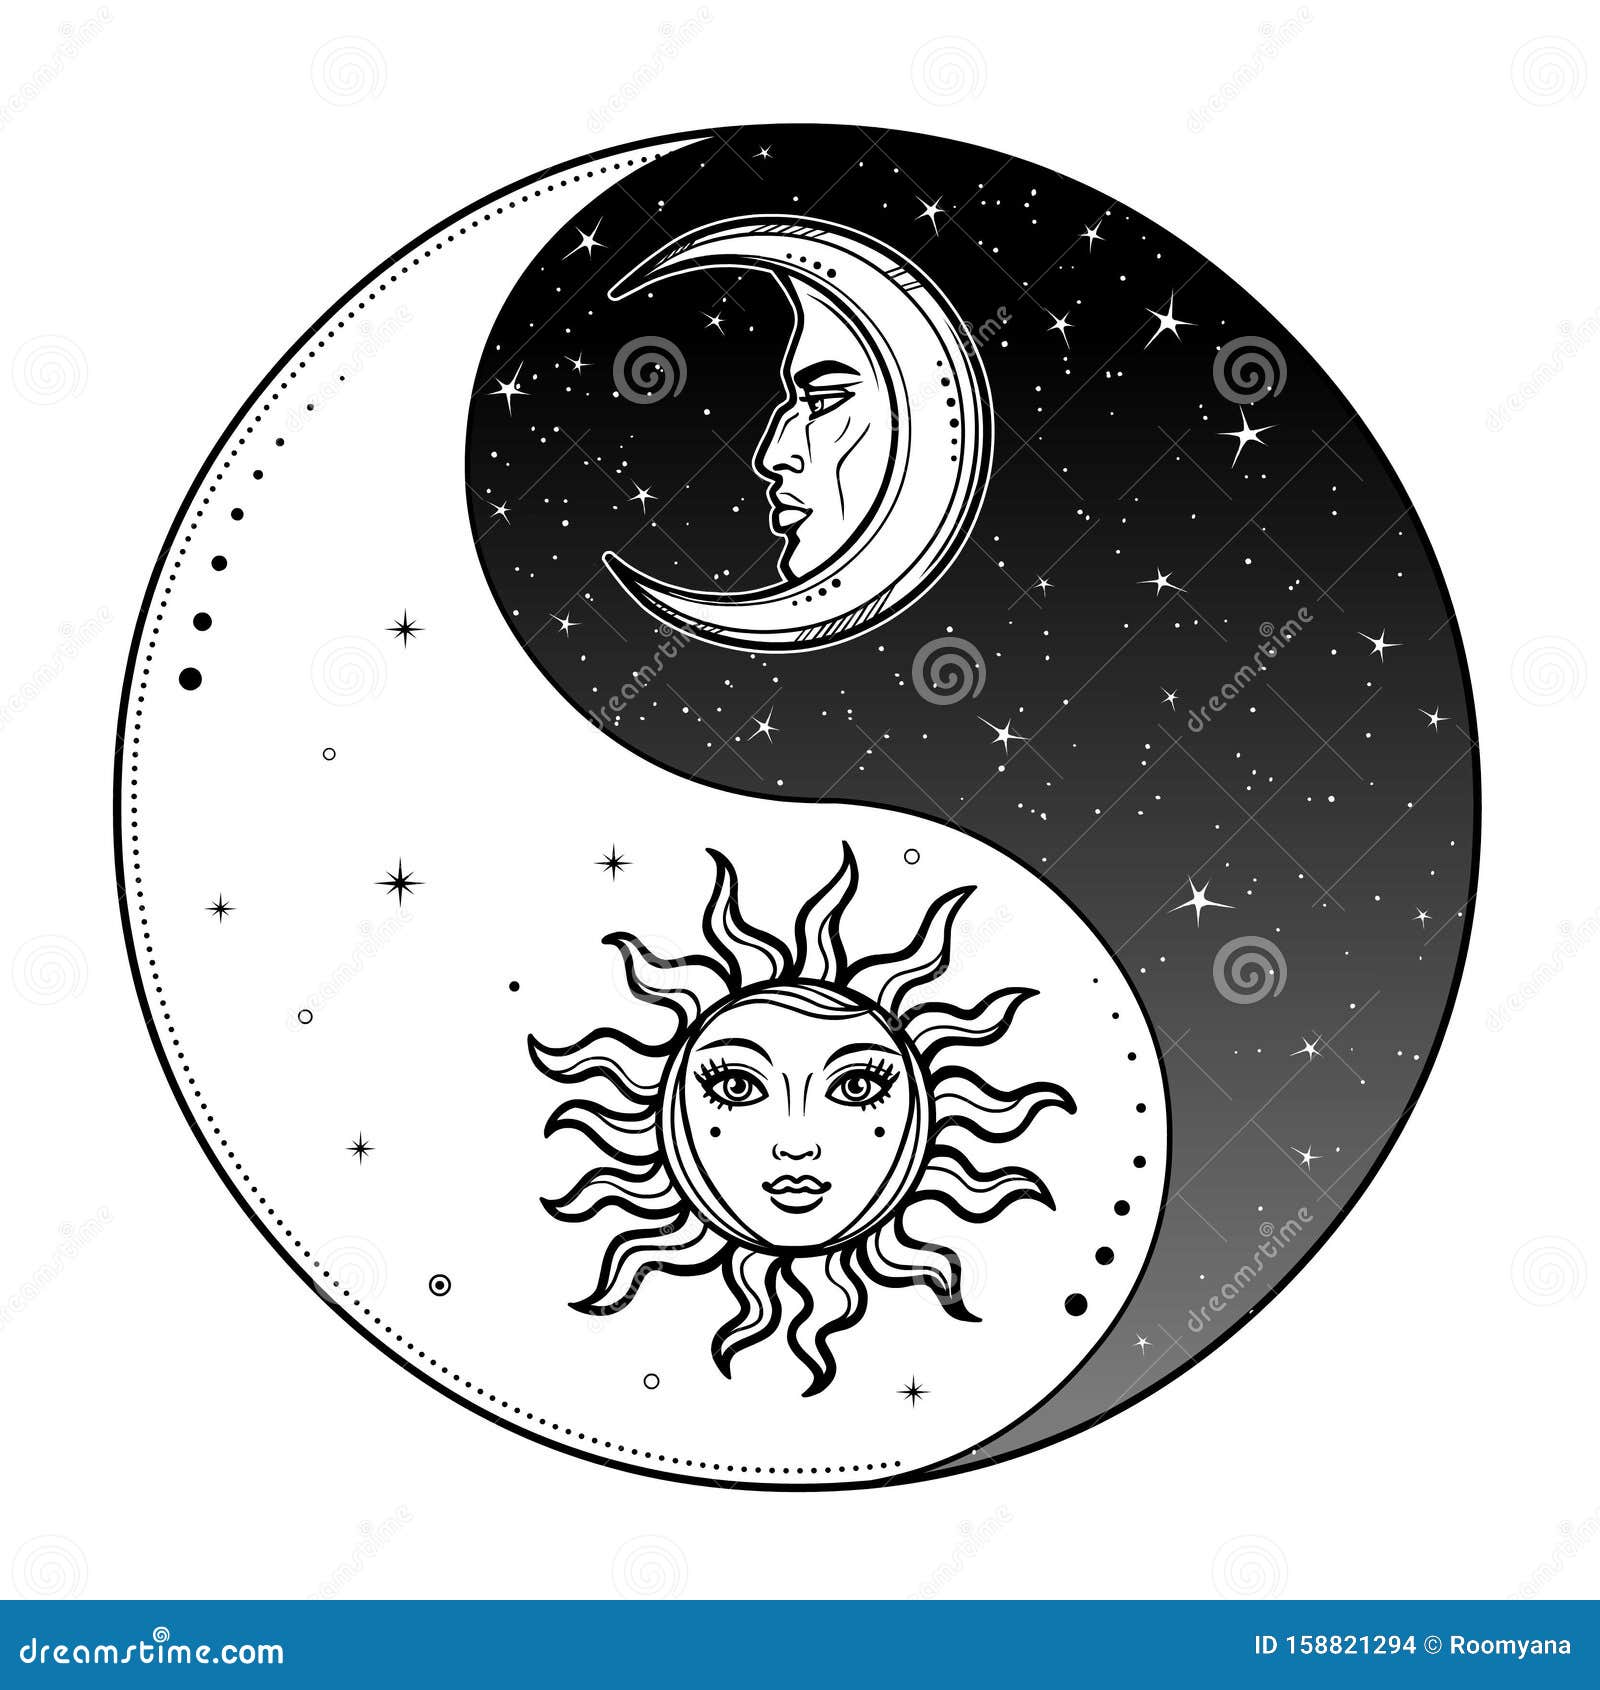 LCGGDB Sketchy - Camino de mesa de comedor, diseño de sol y luna, diseño de  círculo de día de composición, diseño de arte místico de inspiración para